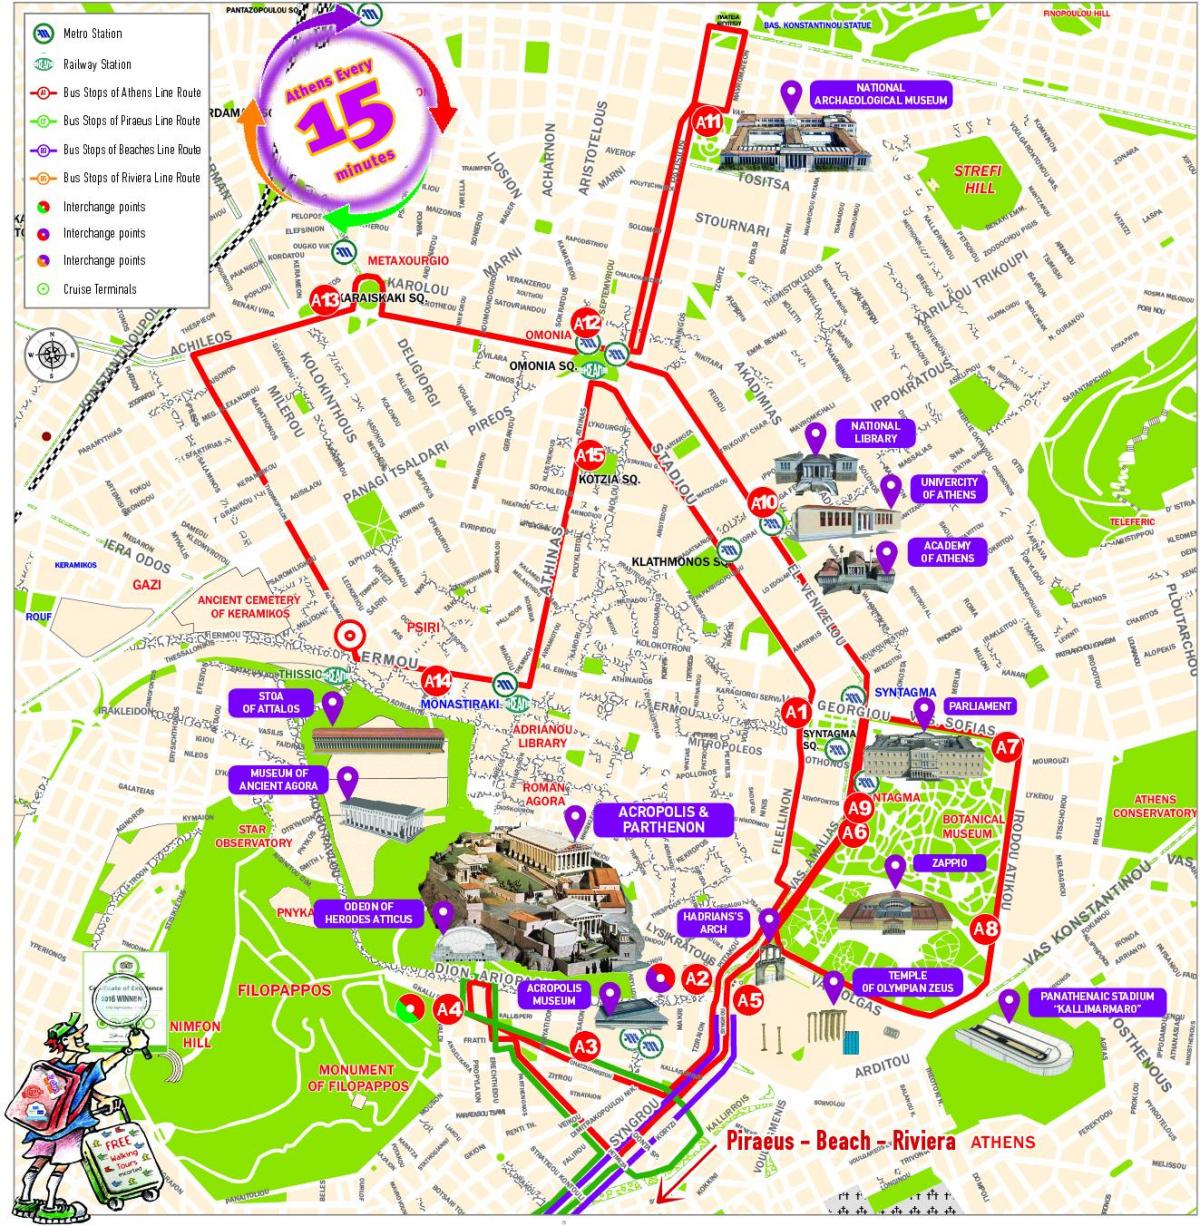 Athens walking tours map